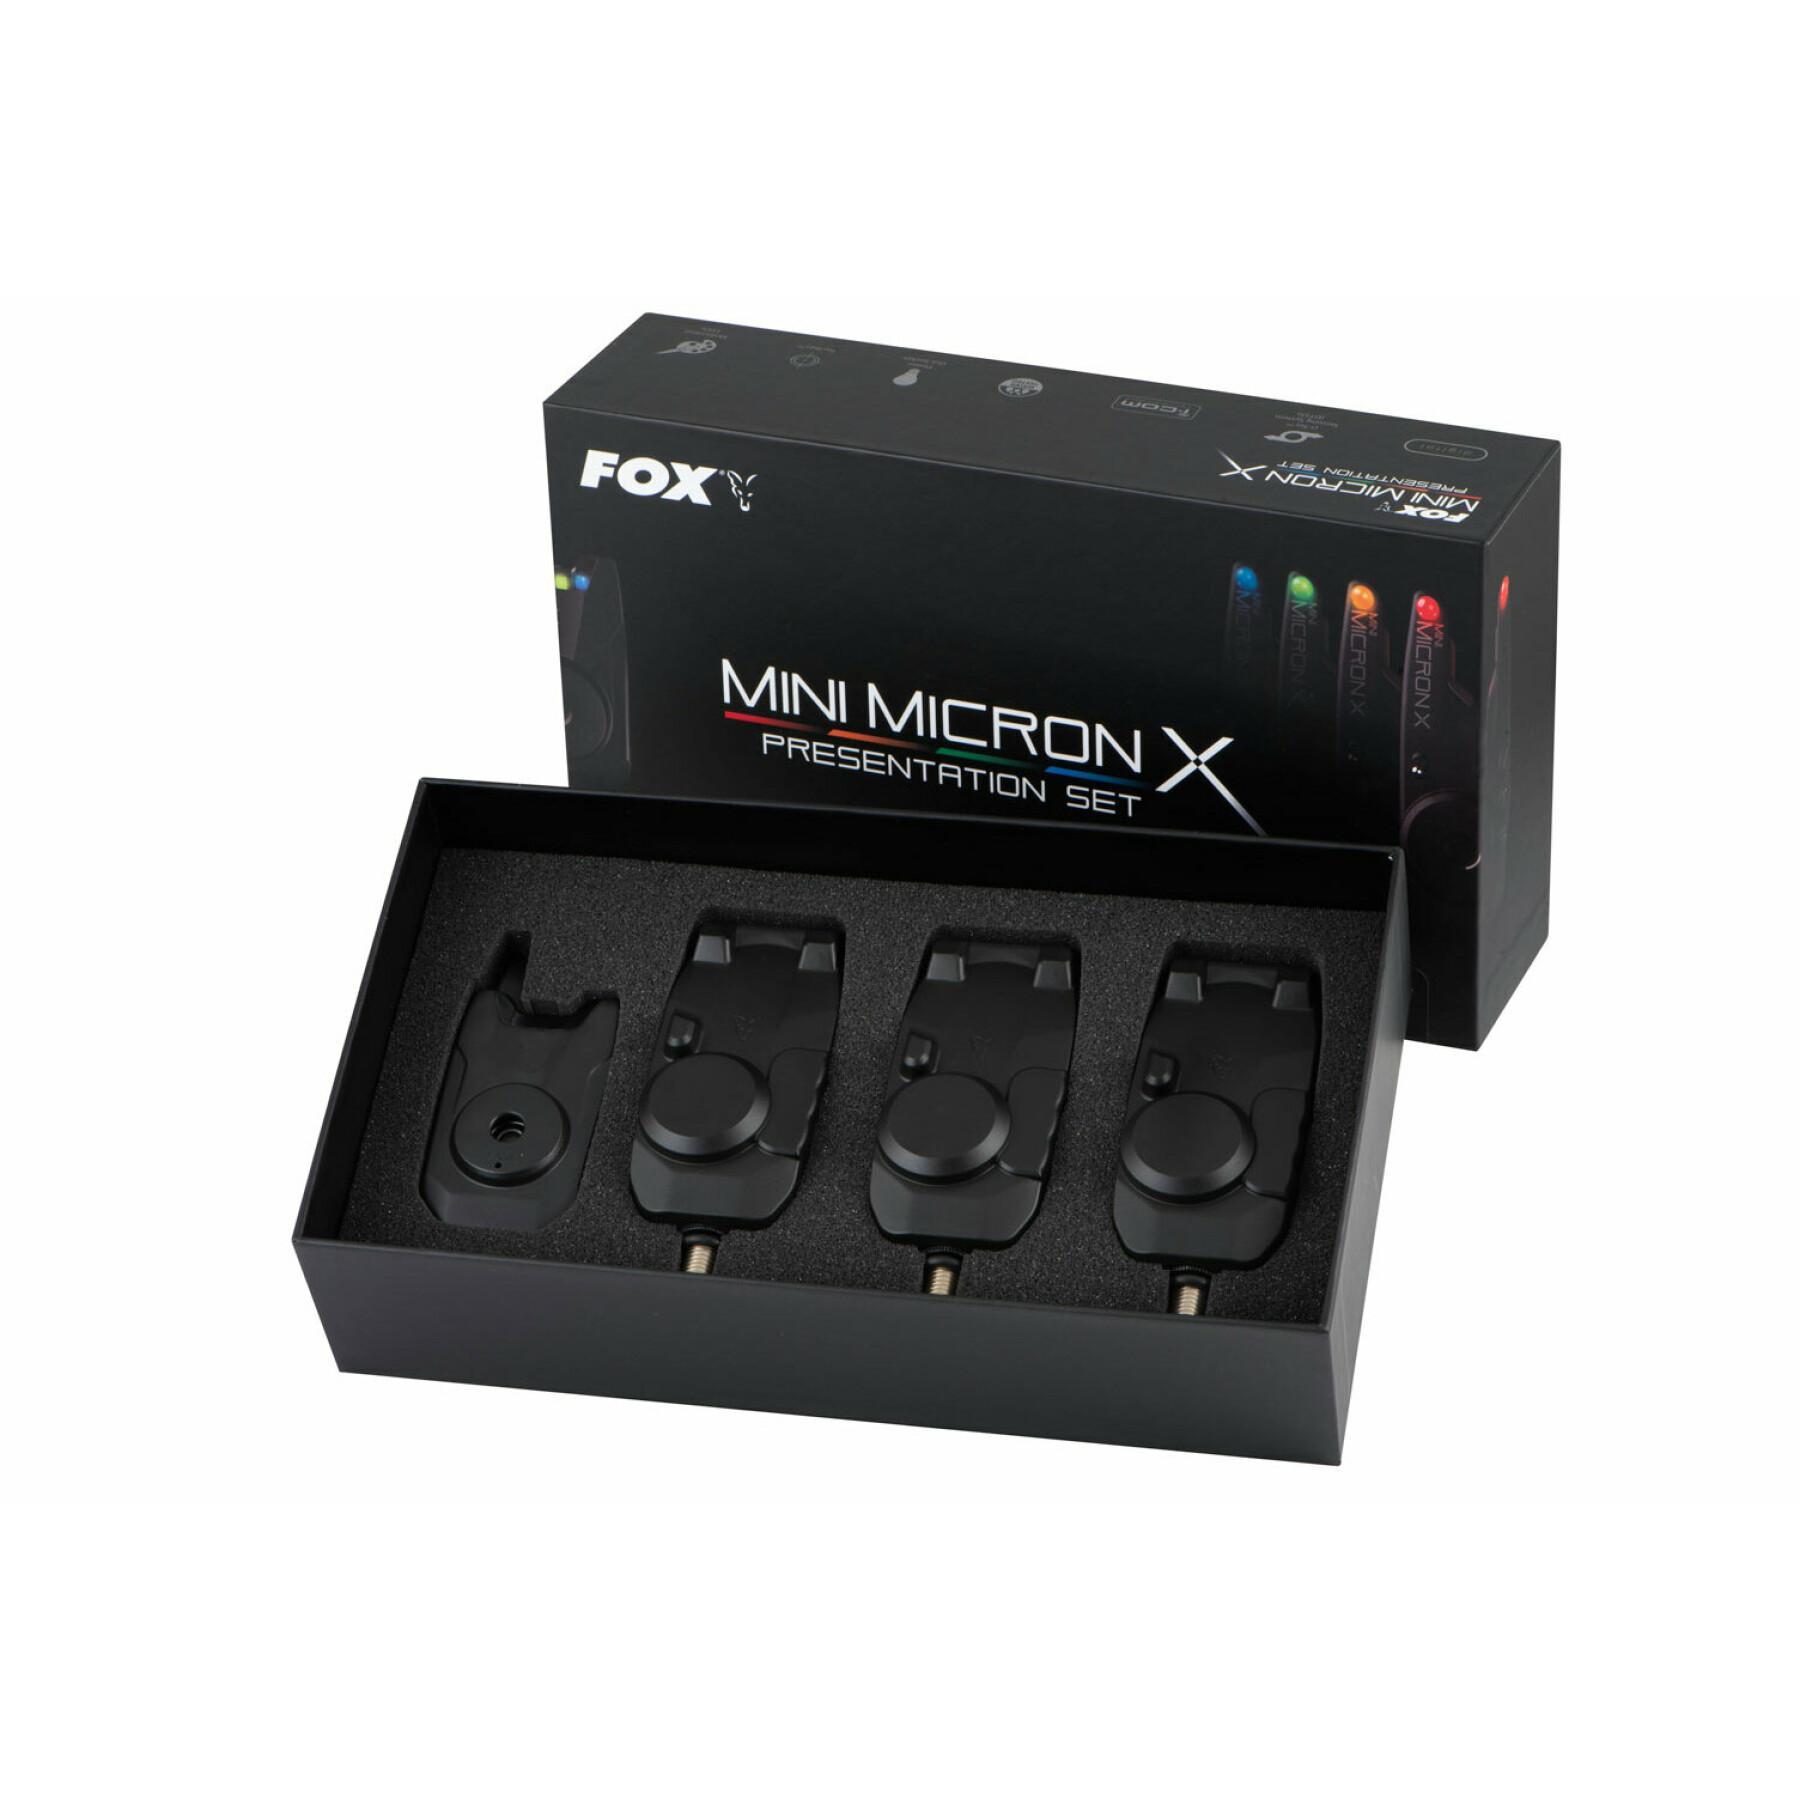 3 Detektoren Fox Mini micron X